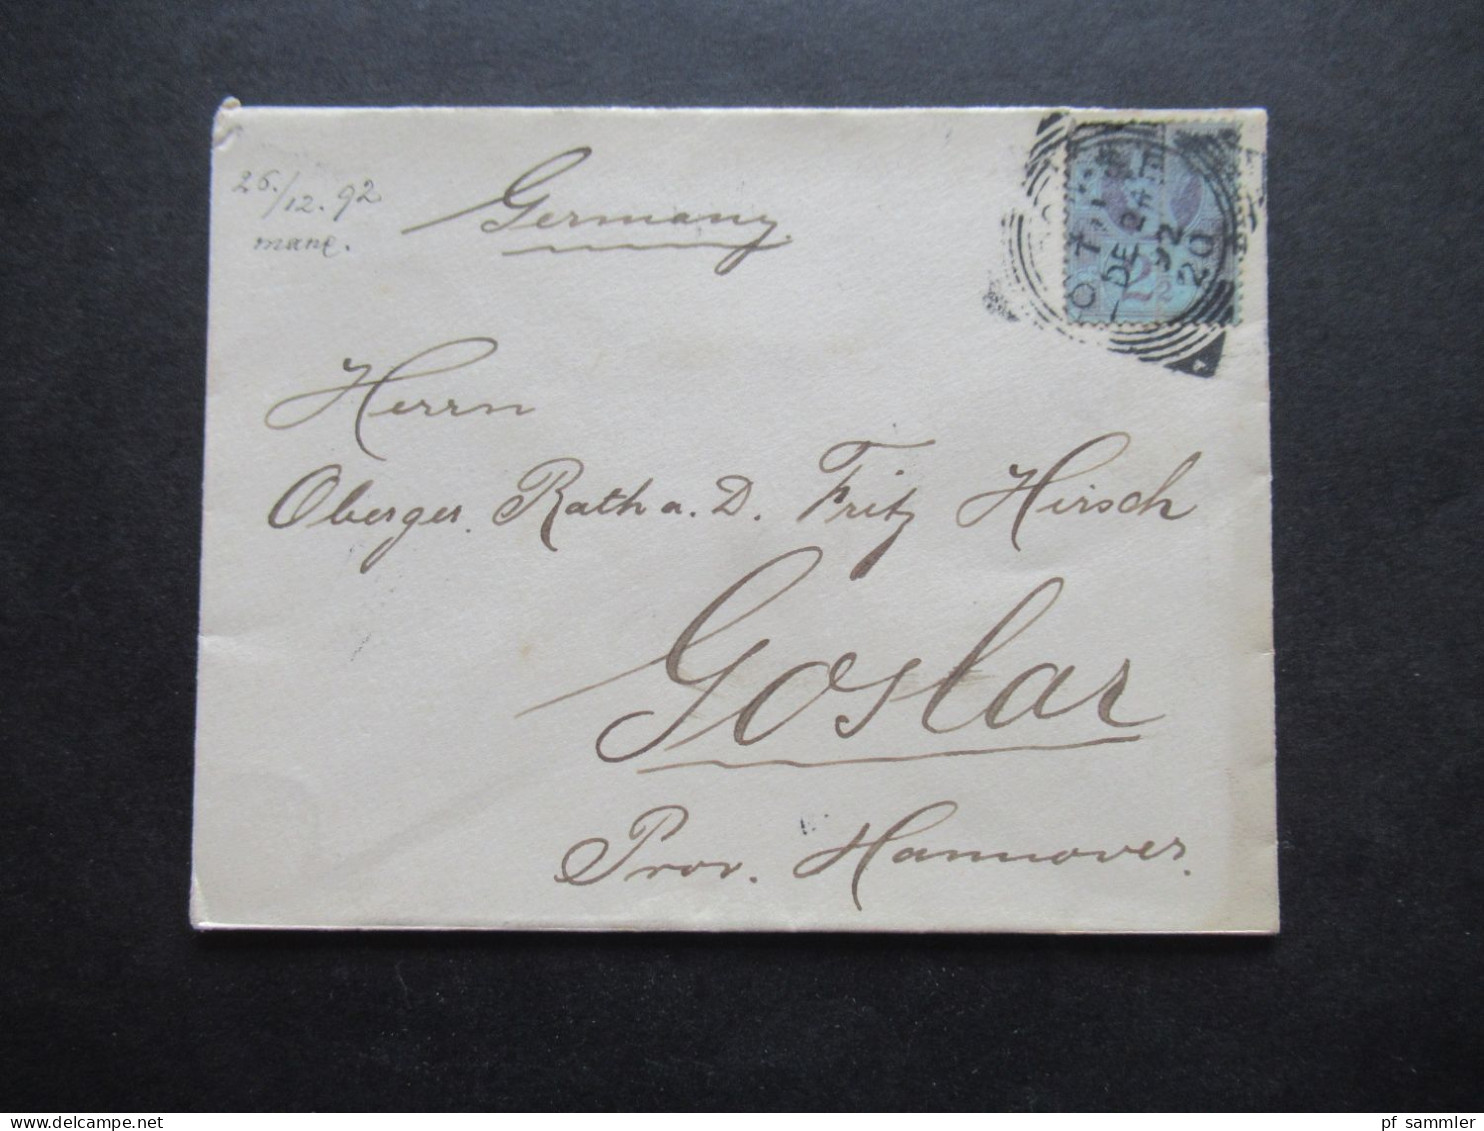 GB 1892 Auslandsbrief Nach Goslar Prov. Hannover Mit Ank. Stempel Und Mit 2 1/2d Marke - Lettres & Documents